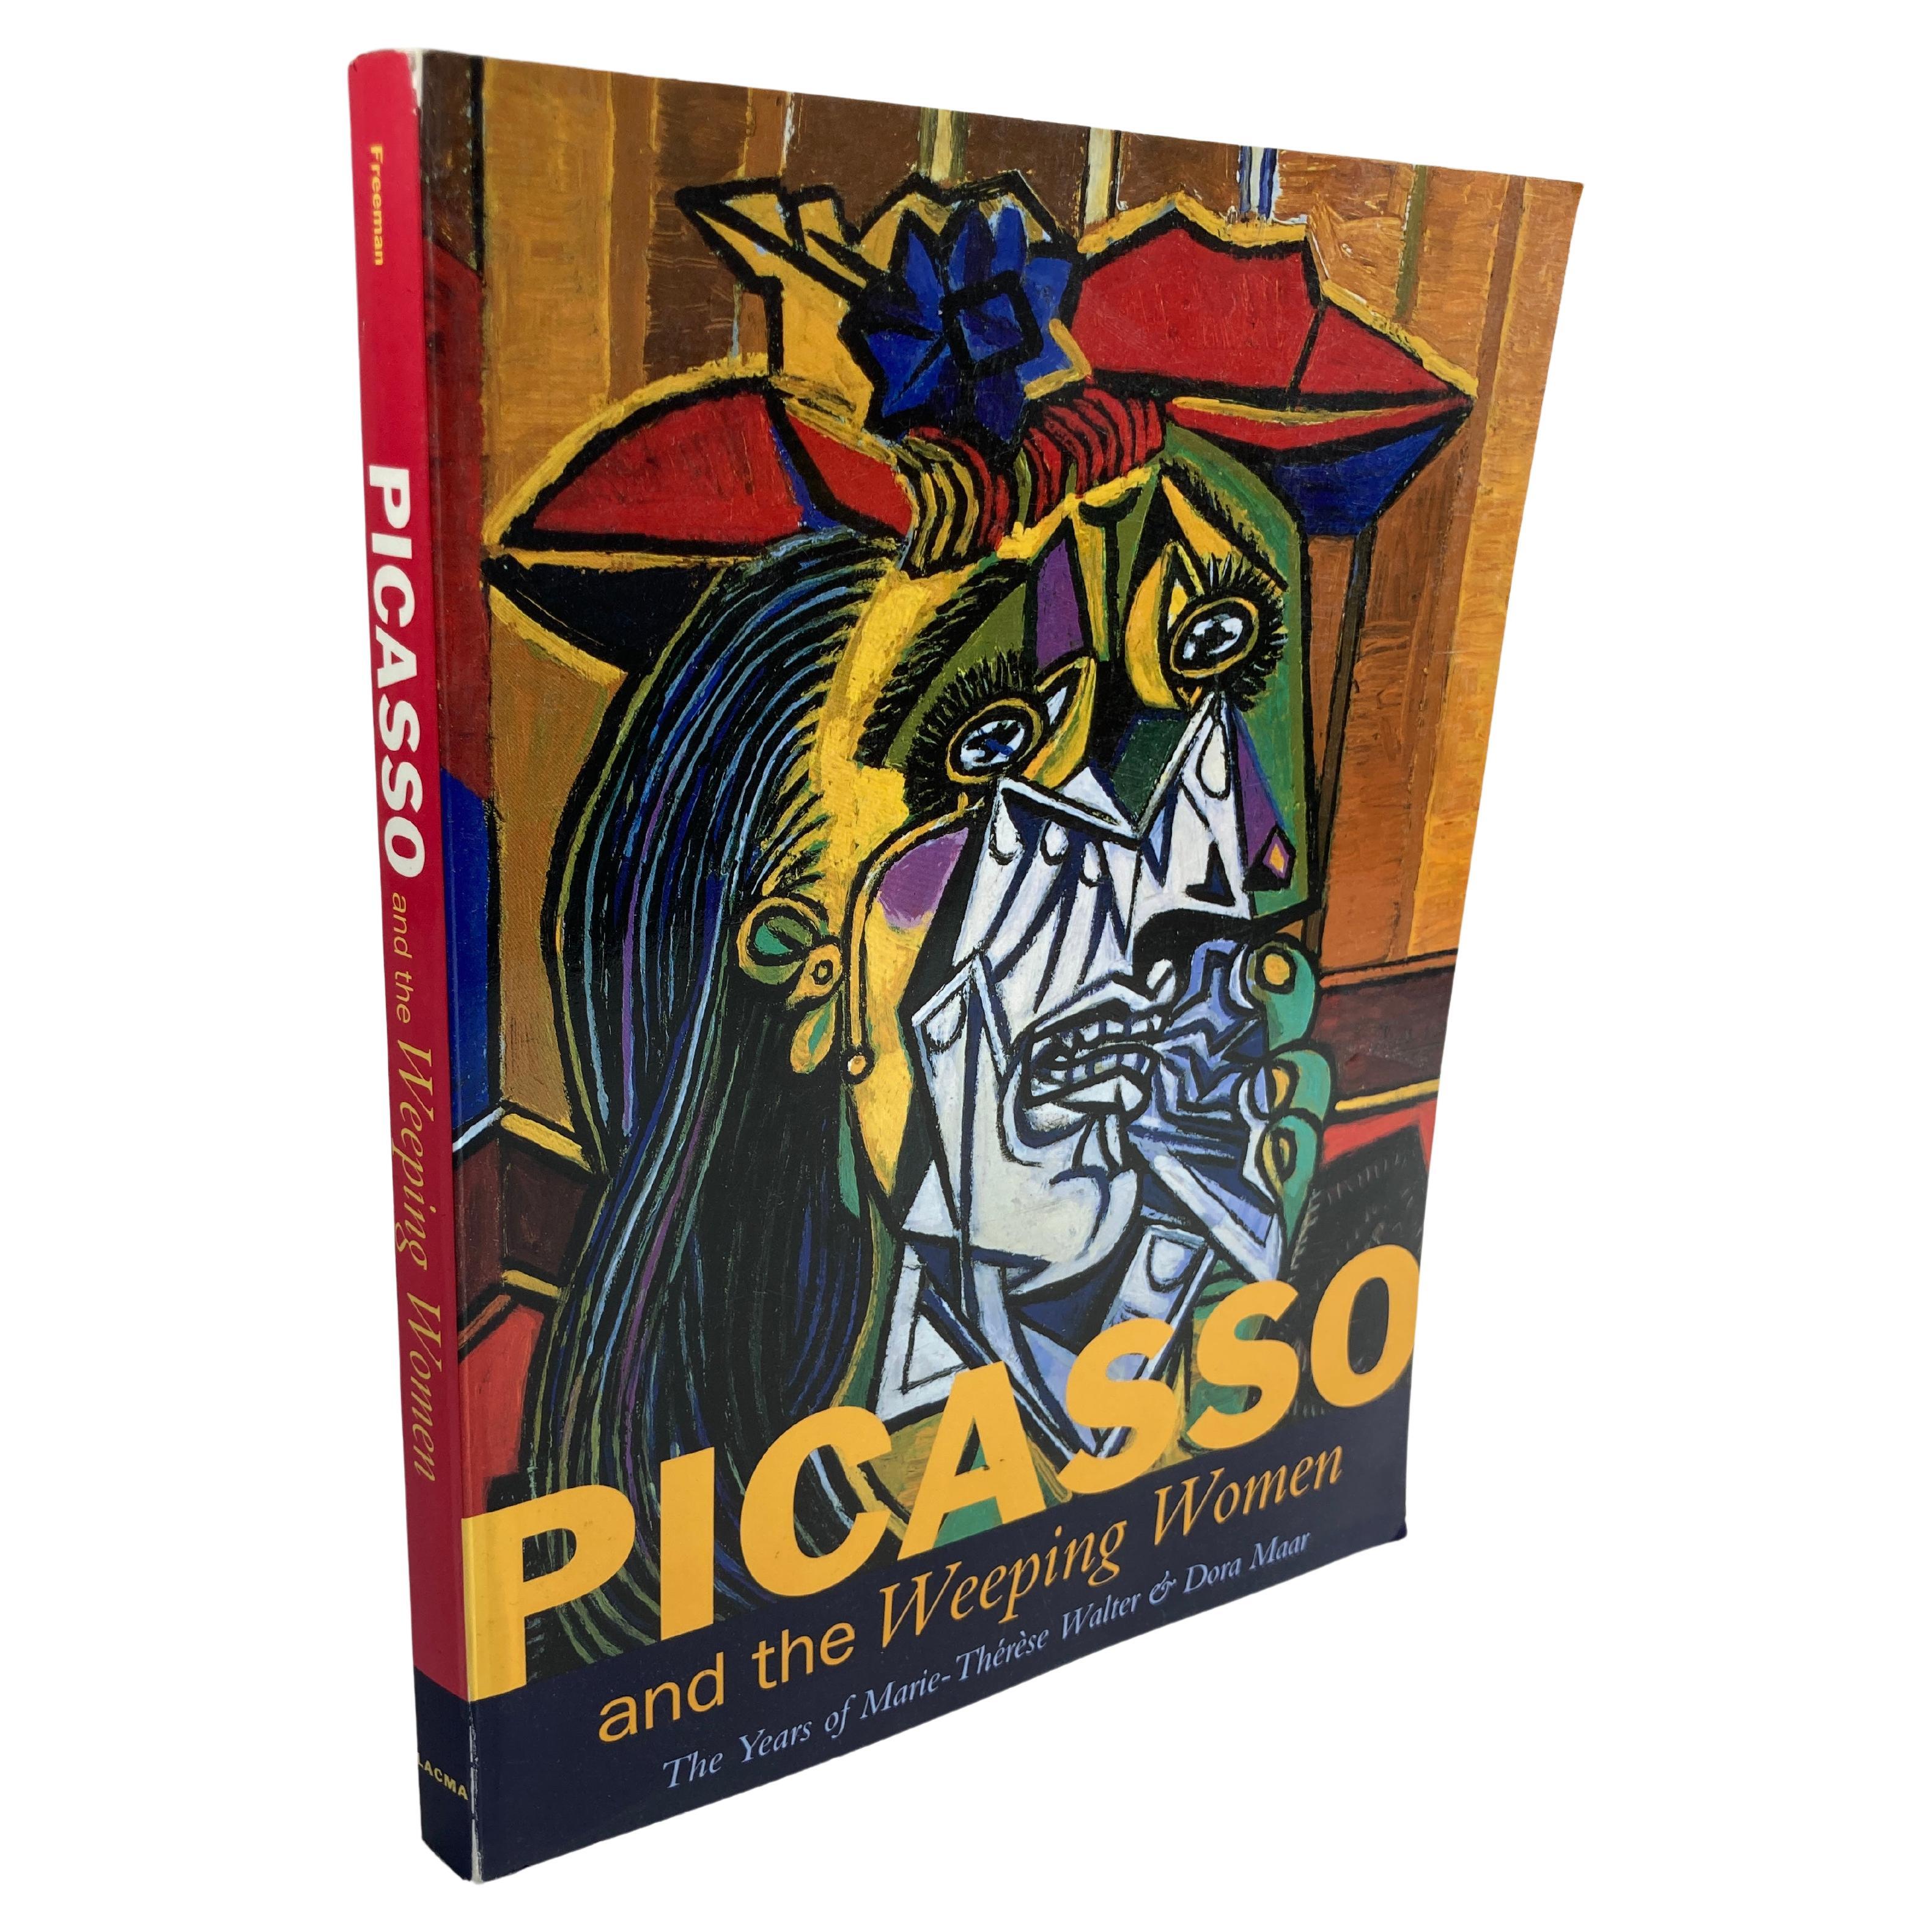 Picasso et les pleureuses, les années de Marie-Thérèse et Dora Maar Livre d'art